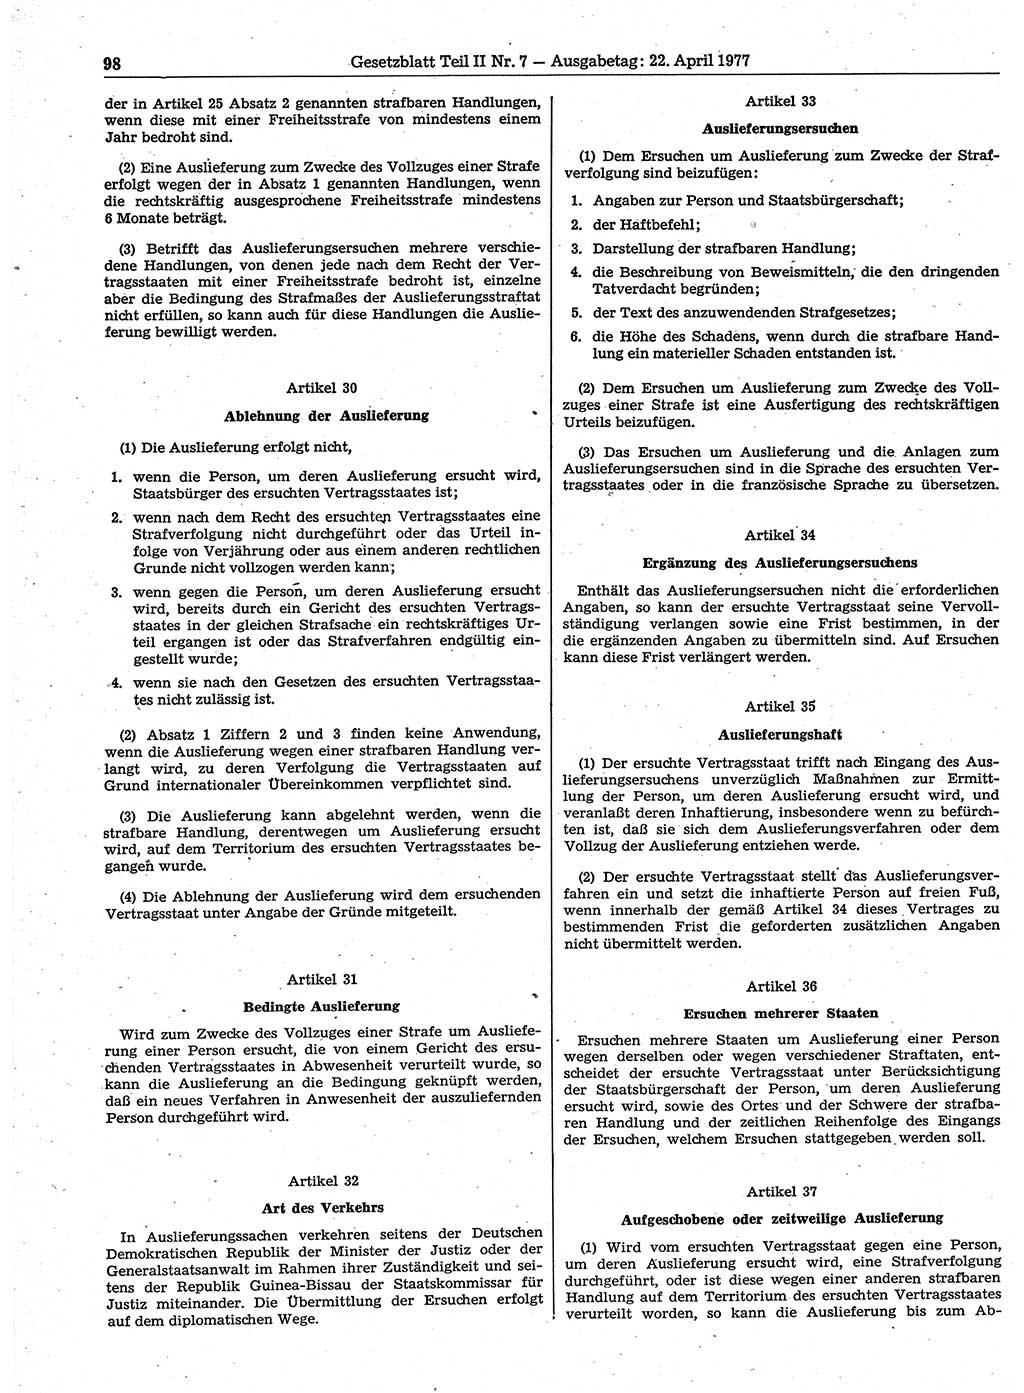 Gesetzblatt (GBl.) der Deutschen Demokratischen Republik (DDR) Teil ⅠⅠ 1977, Seite 98 (GBl. DDR ⅠⅠ 1977, S. 98)